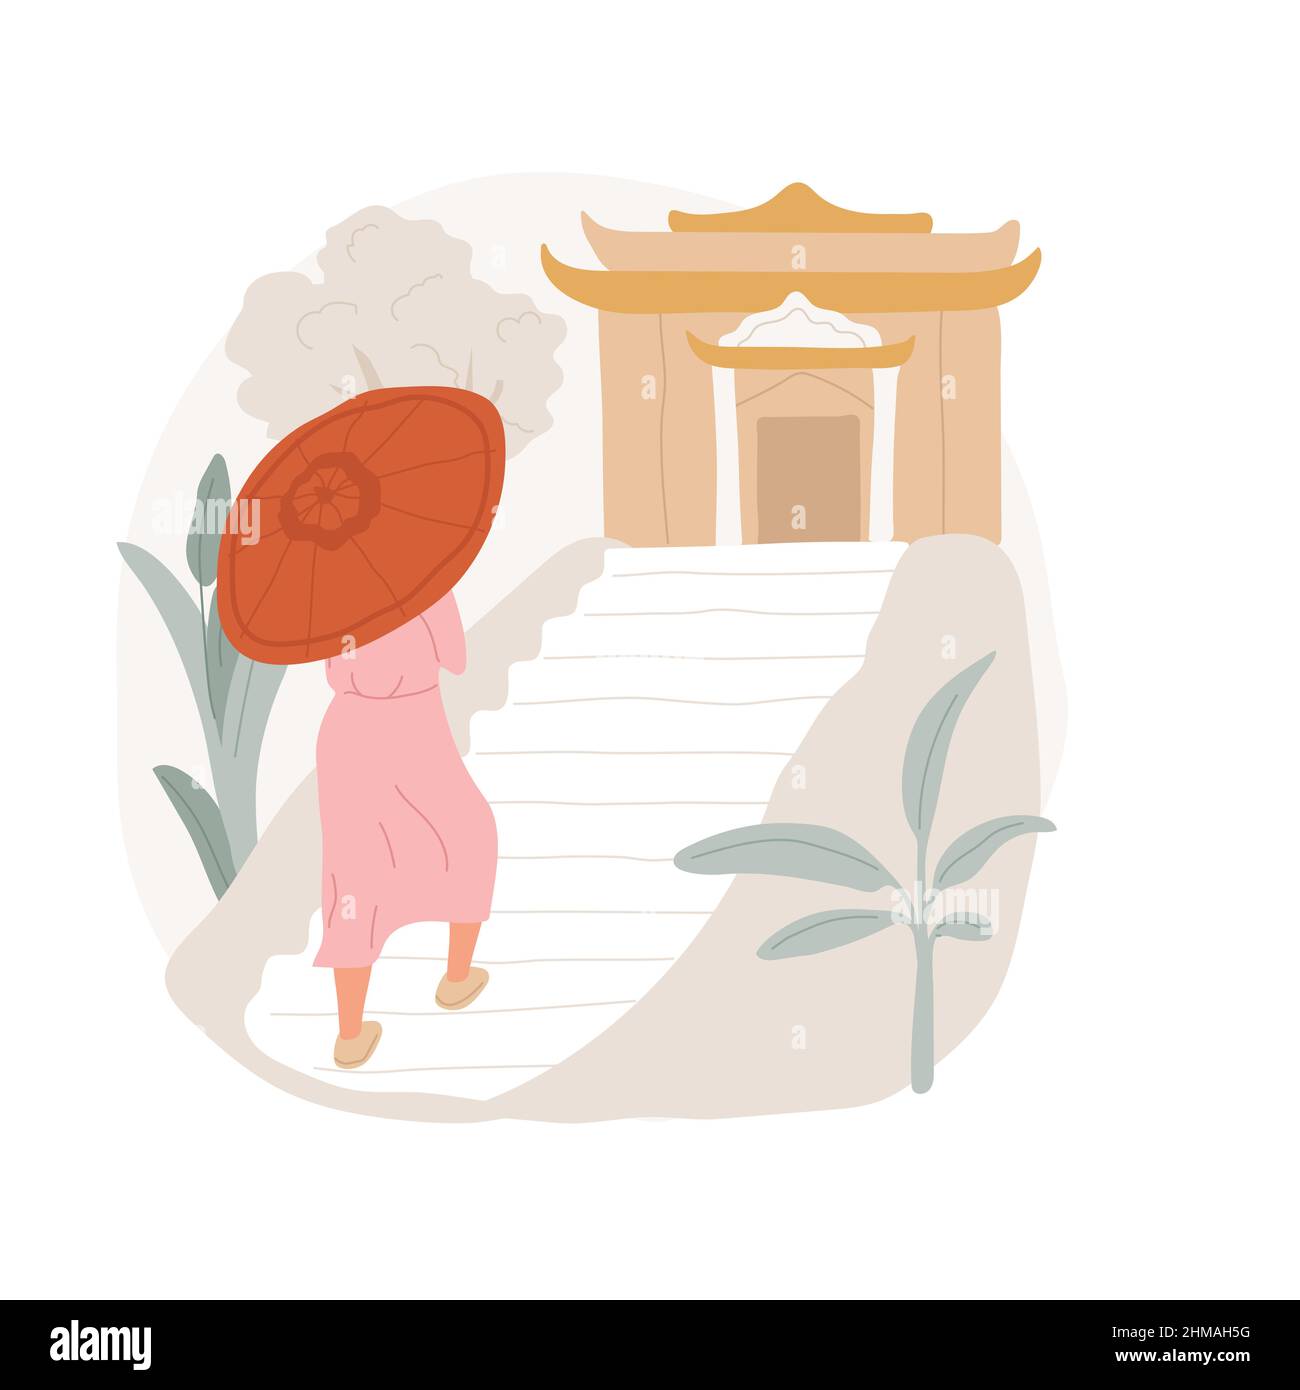 Visite d'une illustration vectorielle abstraite de concept de temple. Touriste bouddhiste avec parapluie visitant un lieu Saint, temple présent, pèlerinage religieux, pratiques spirituelles métaphore abstraite. Illustration de Vecteur